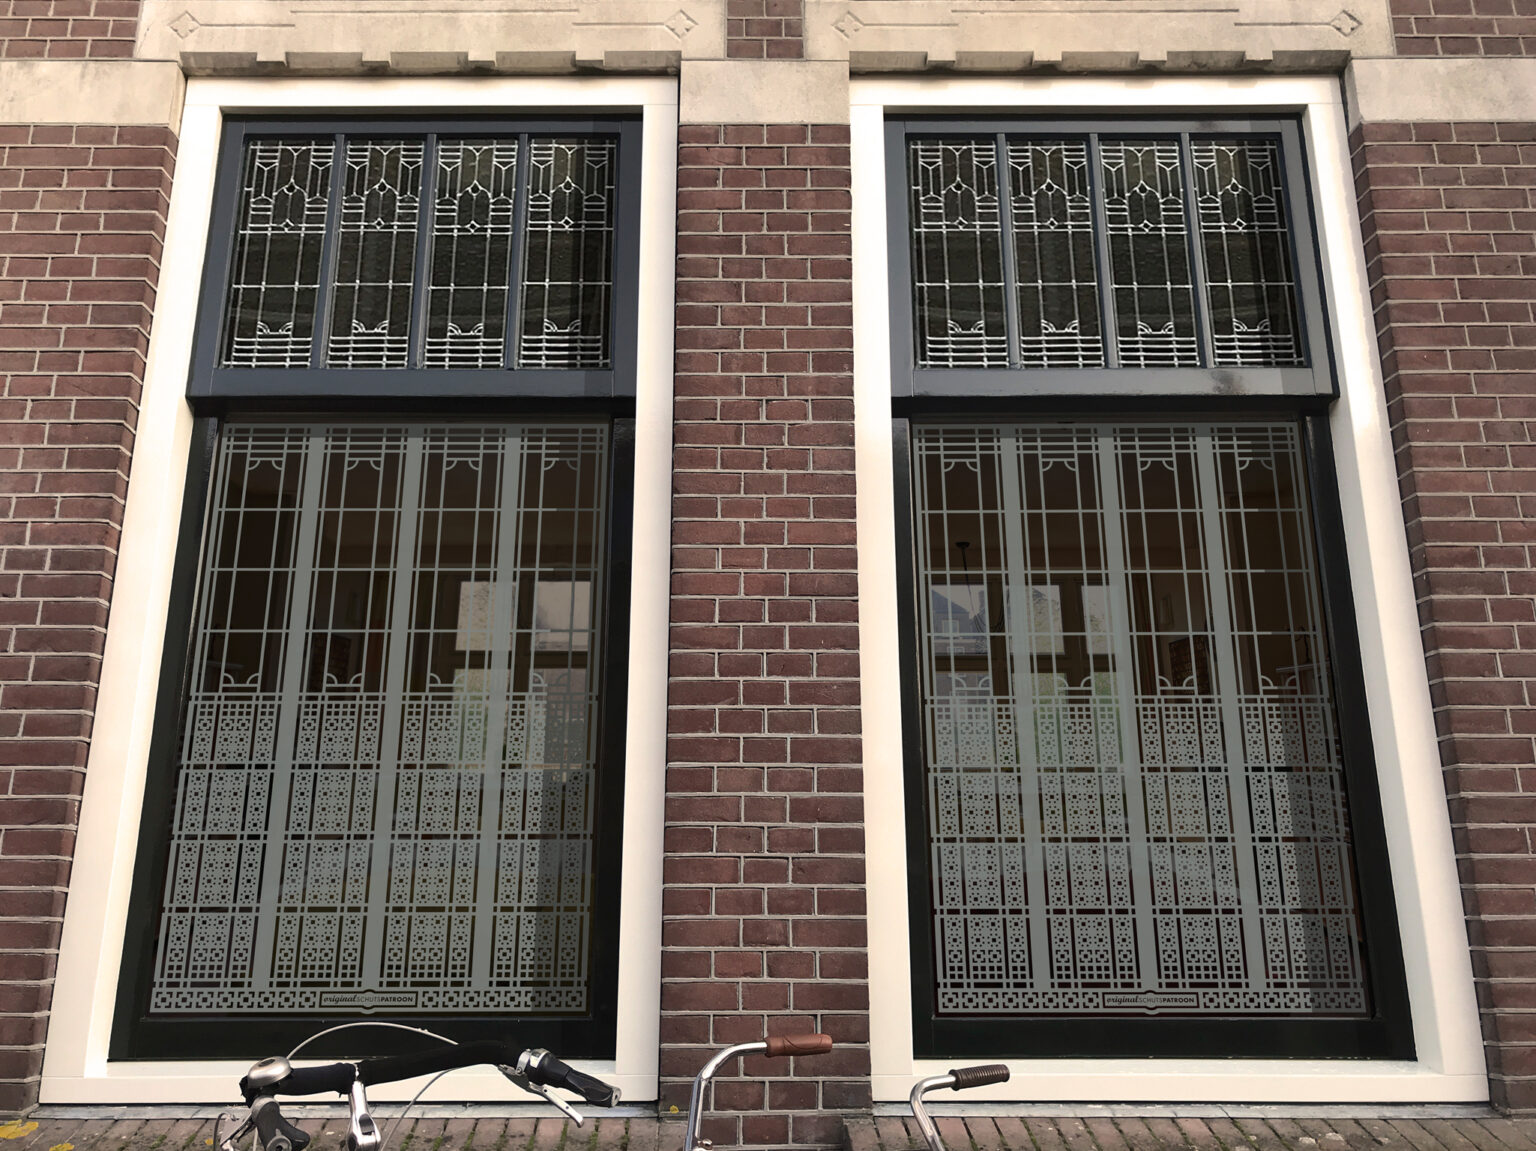 Schutspatroon in Art Nouveau-stijl voor woonkamer van buiten gezien